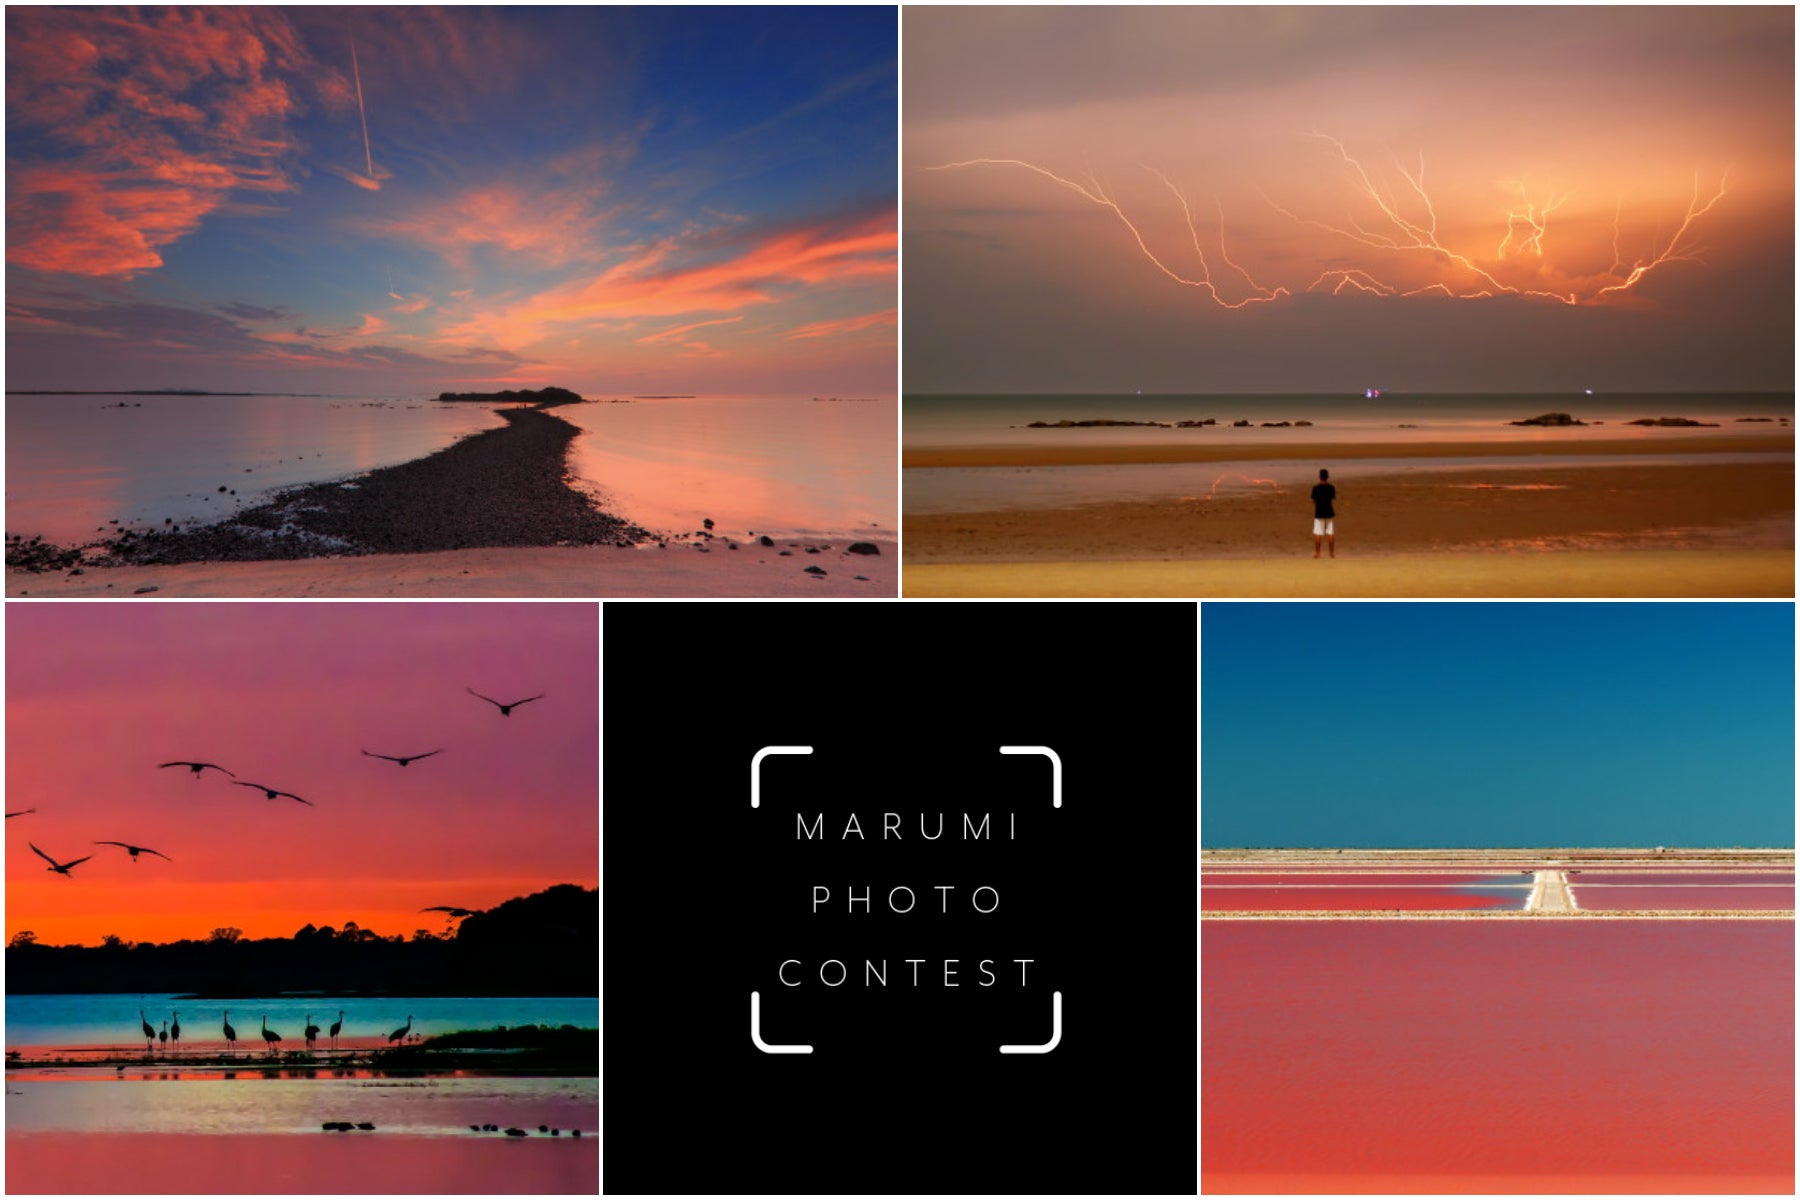 15th Marumi Photo Contest